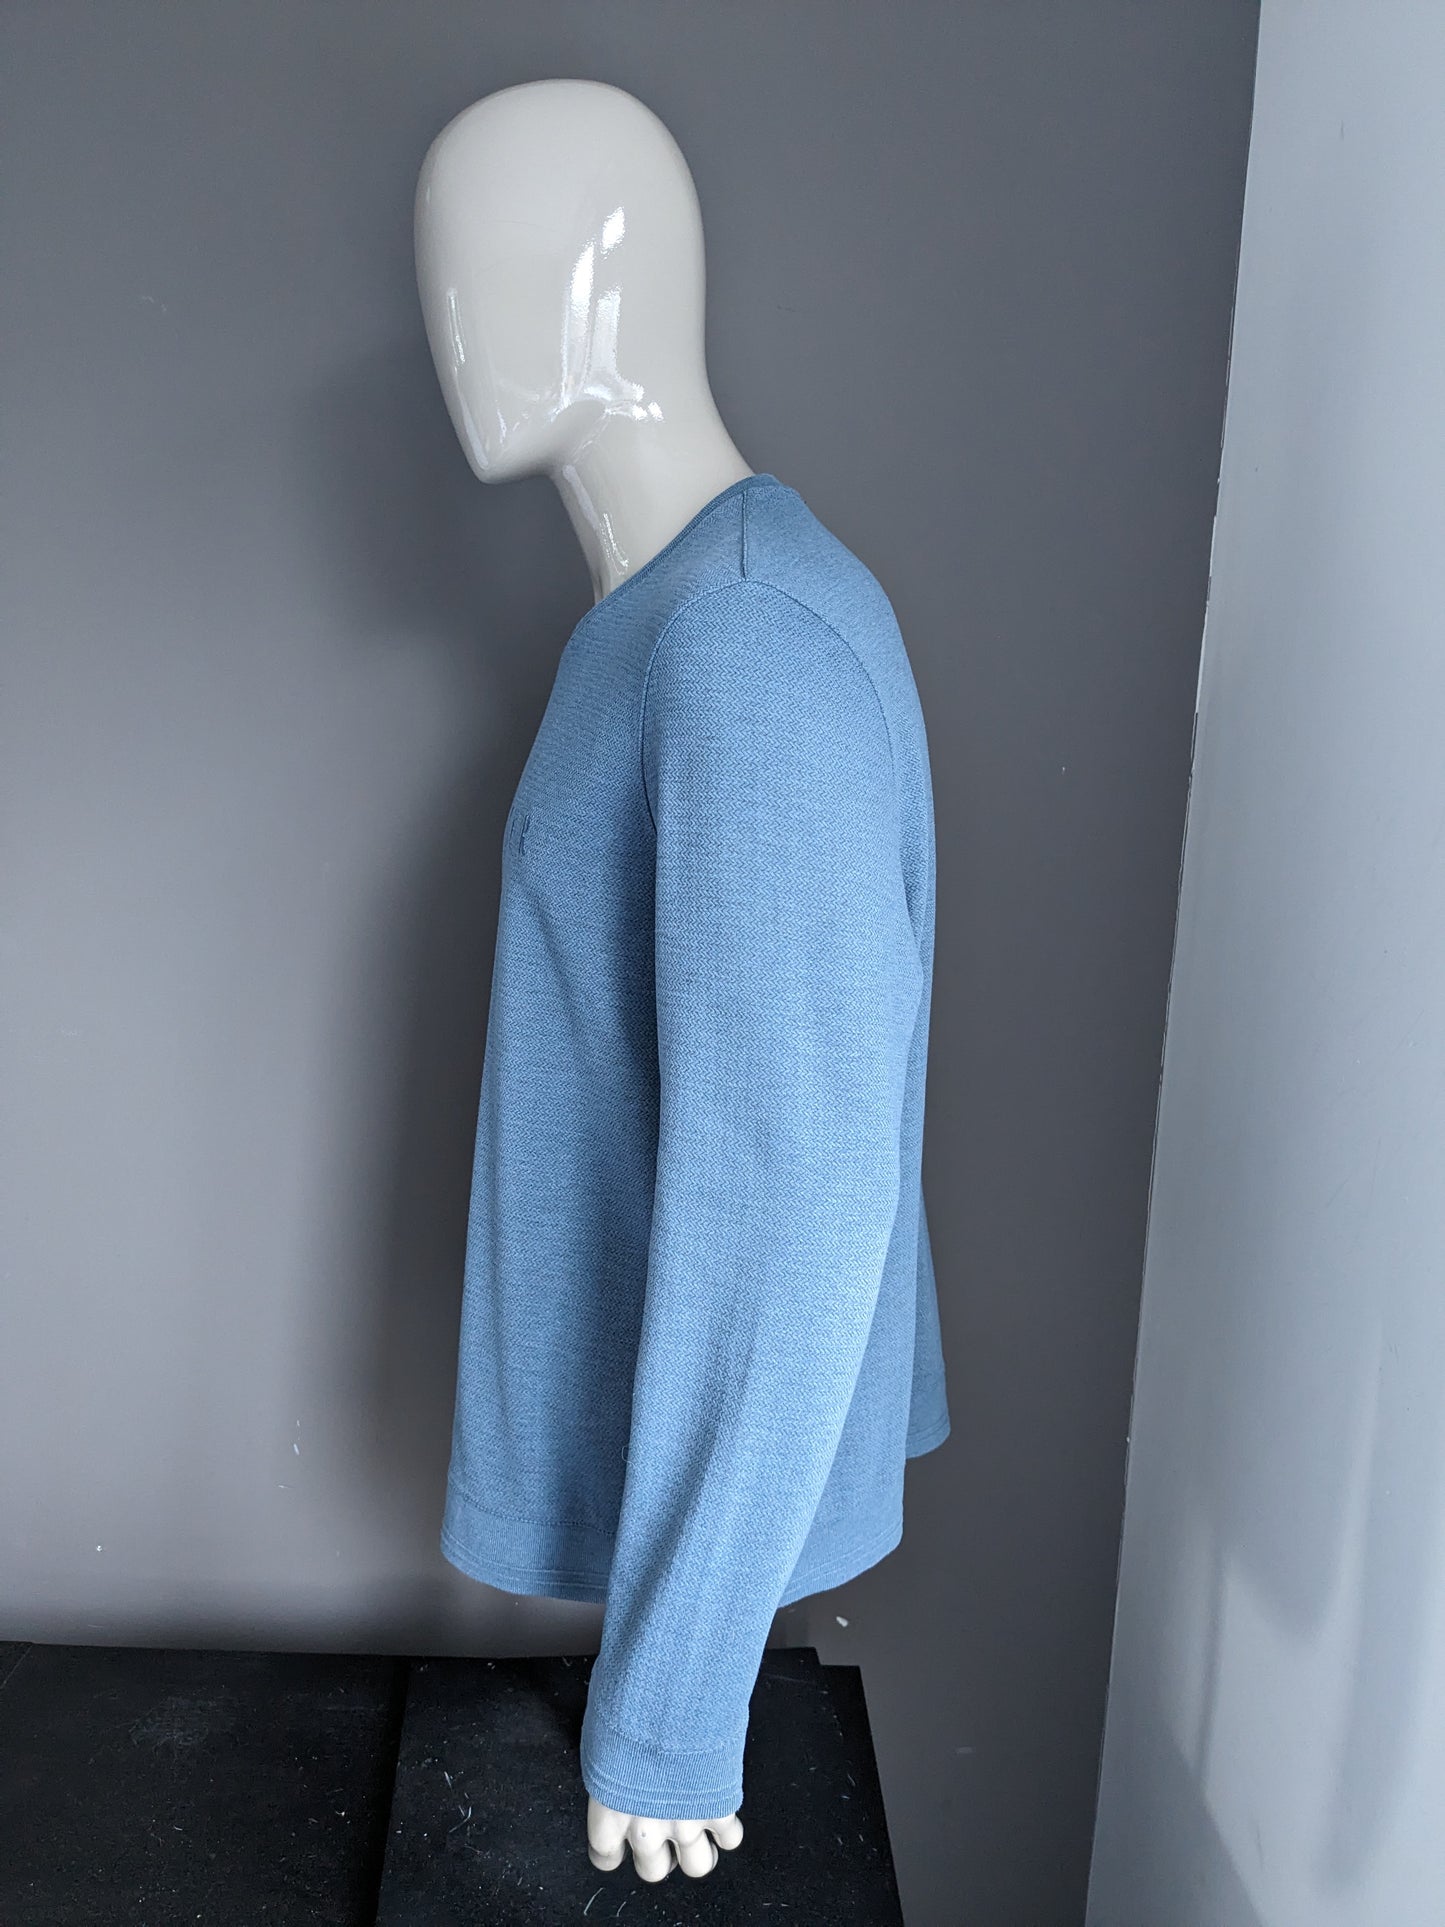 Ted Baker Casual Sweater. Motivo blu a spina di pesce. Taglia XL.